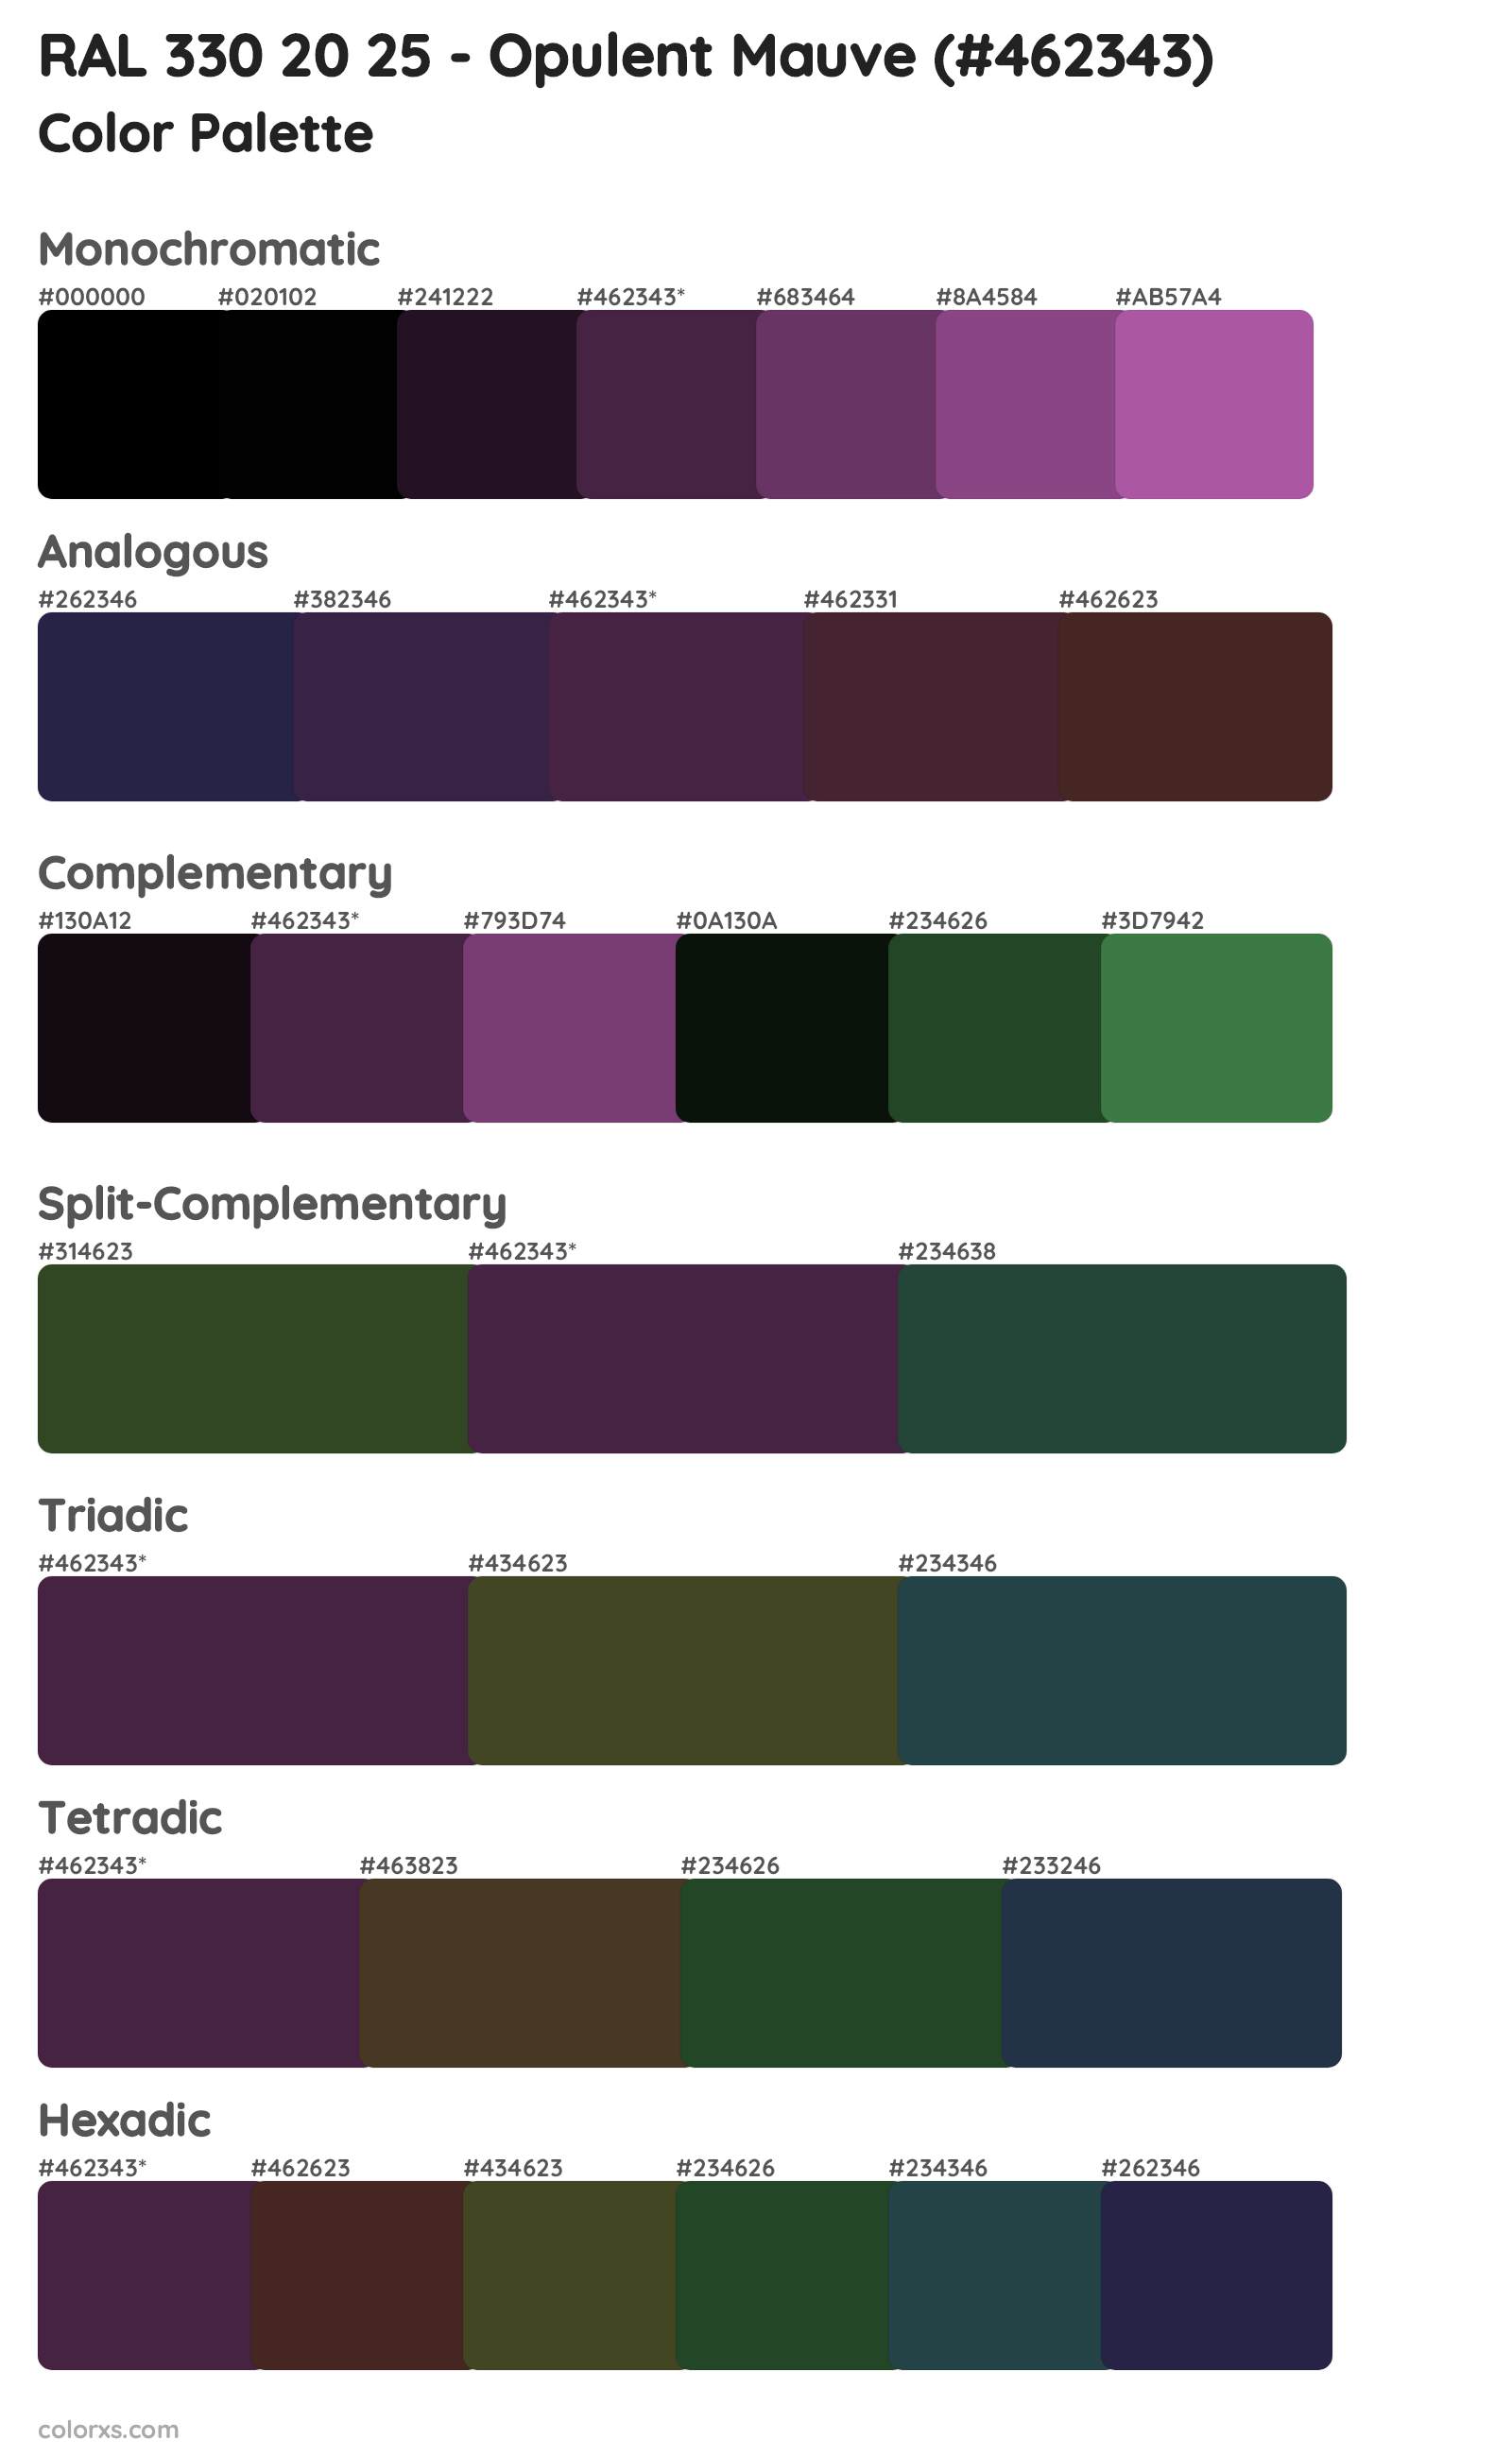 RAL 330 20 25 - Opulent Mauve Color Scheme Palettes